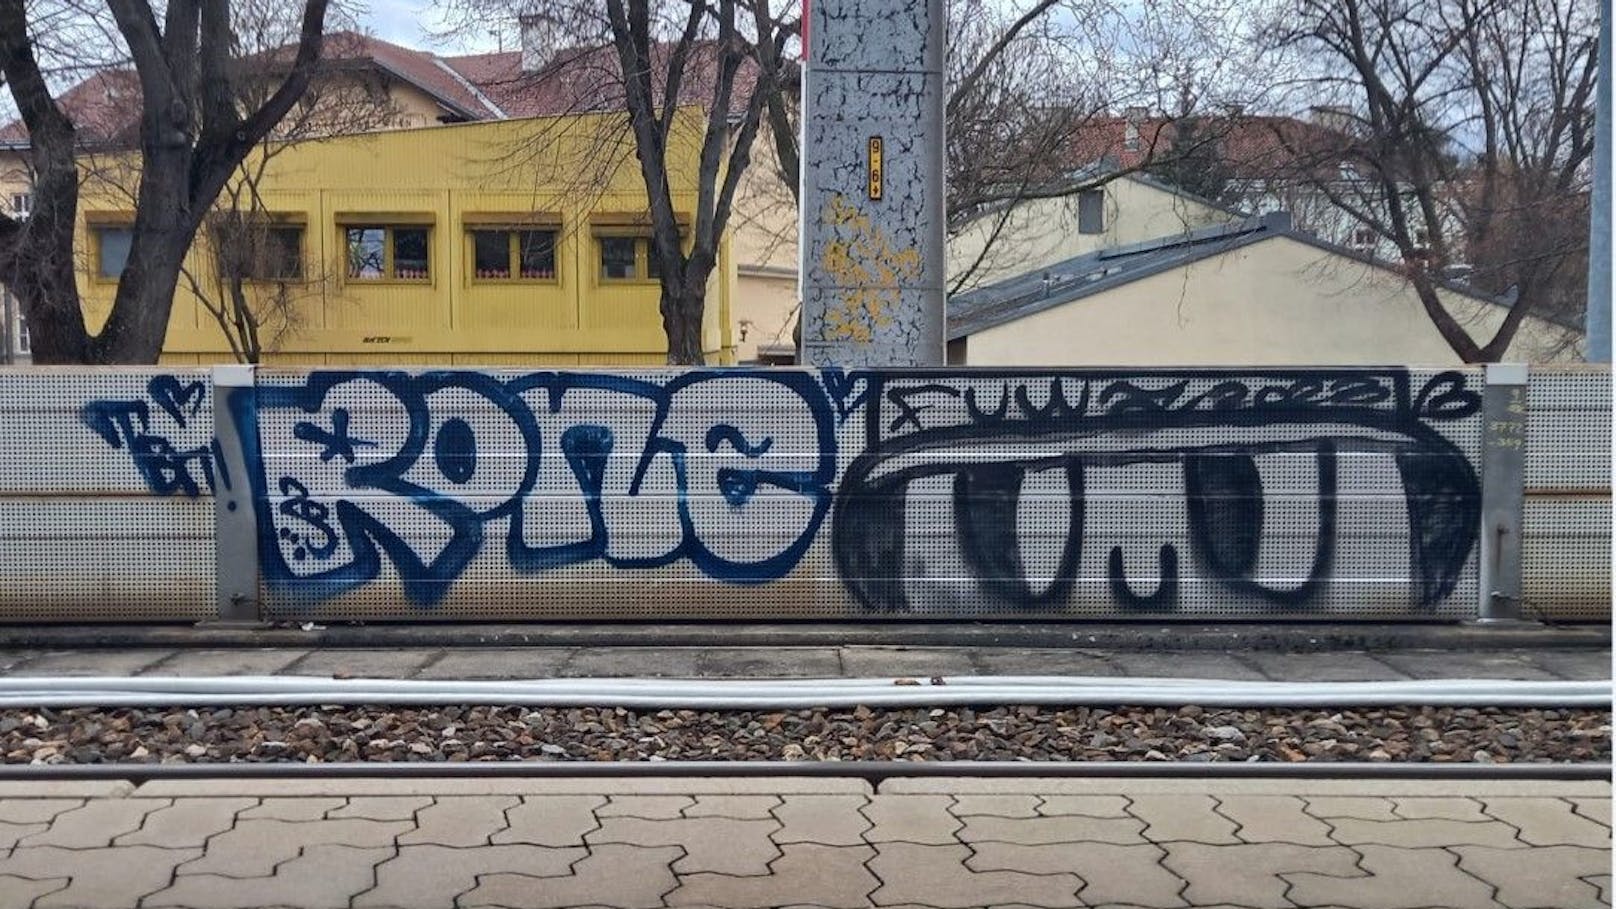 Graffiti-Sprayer (15) verursachten 75.000 € Schaden